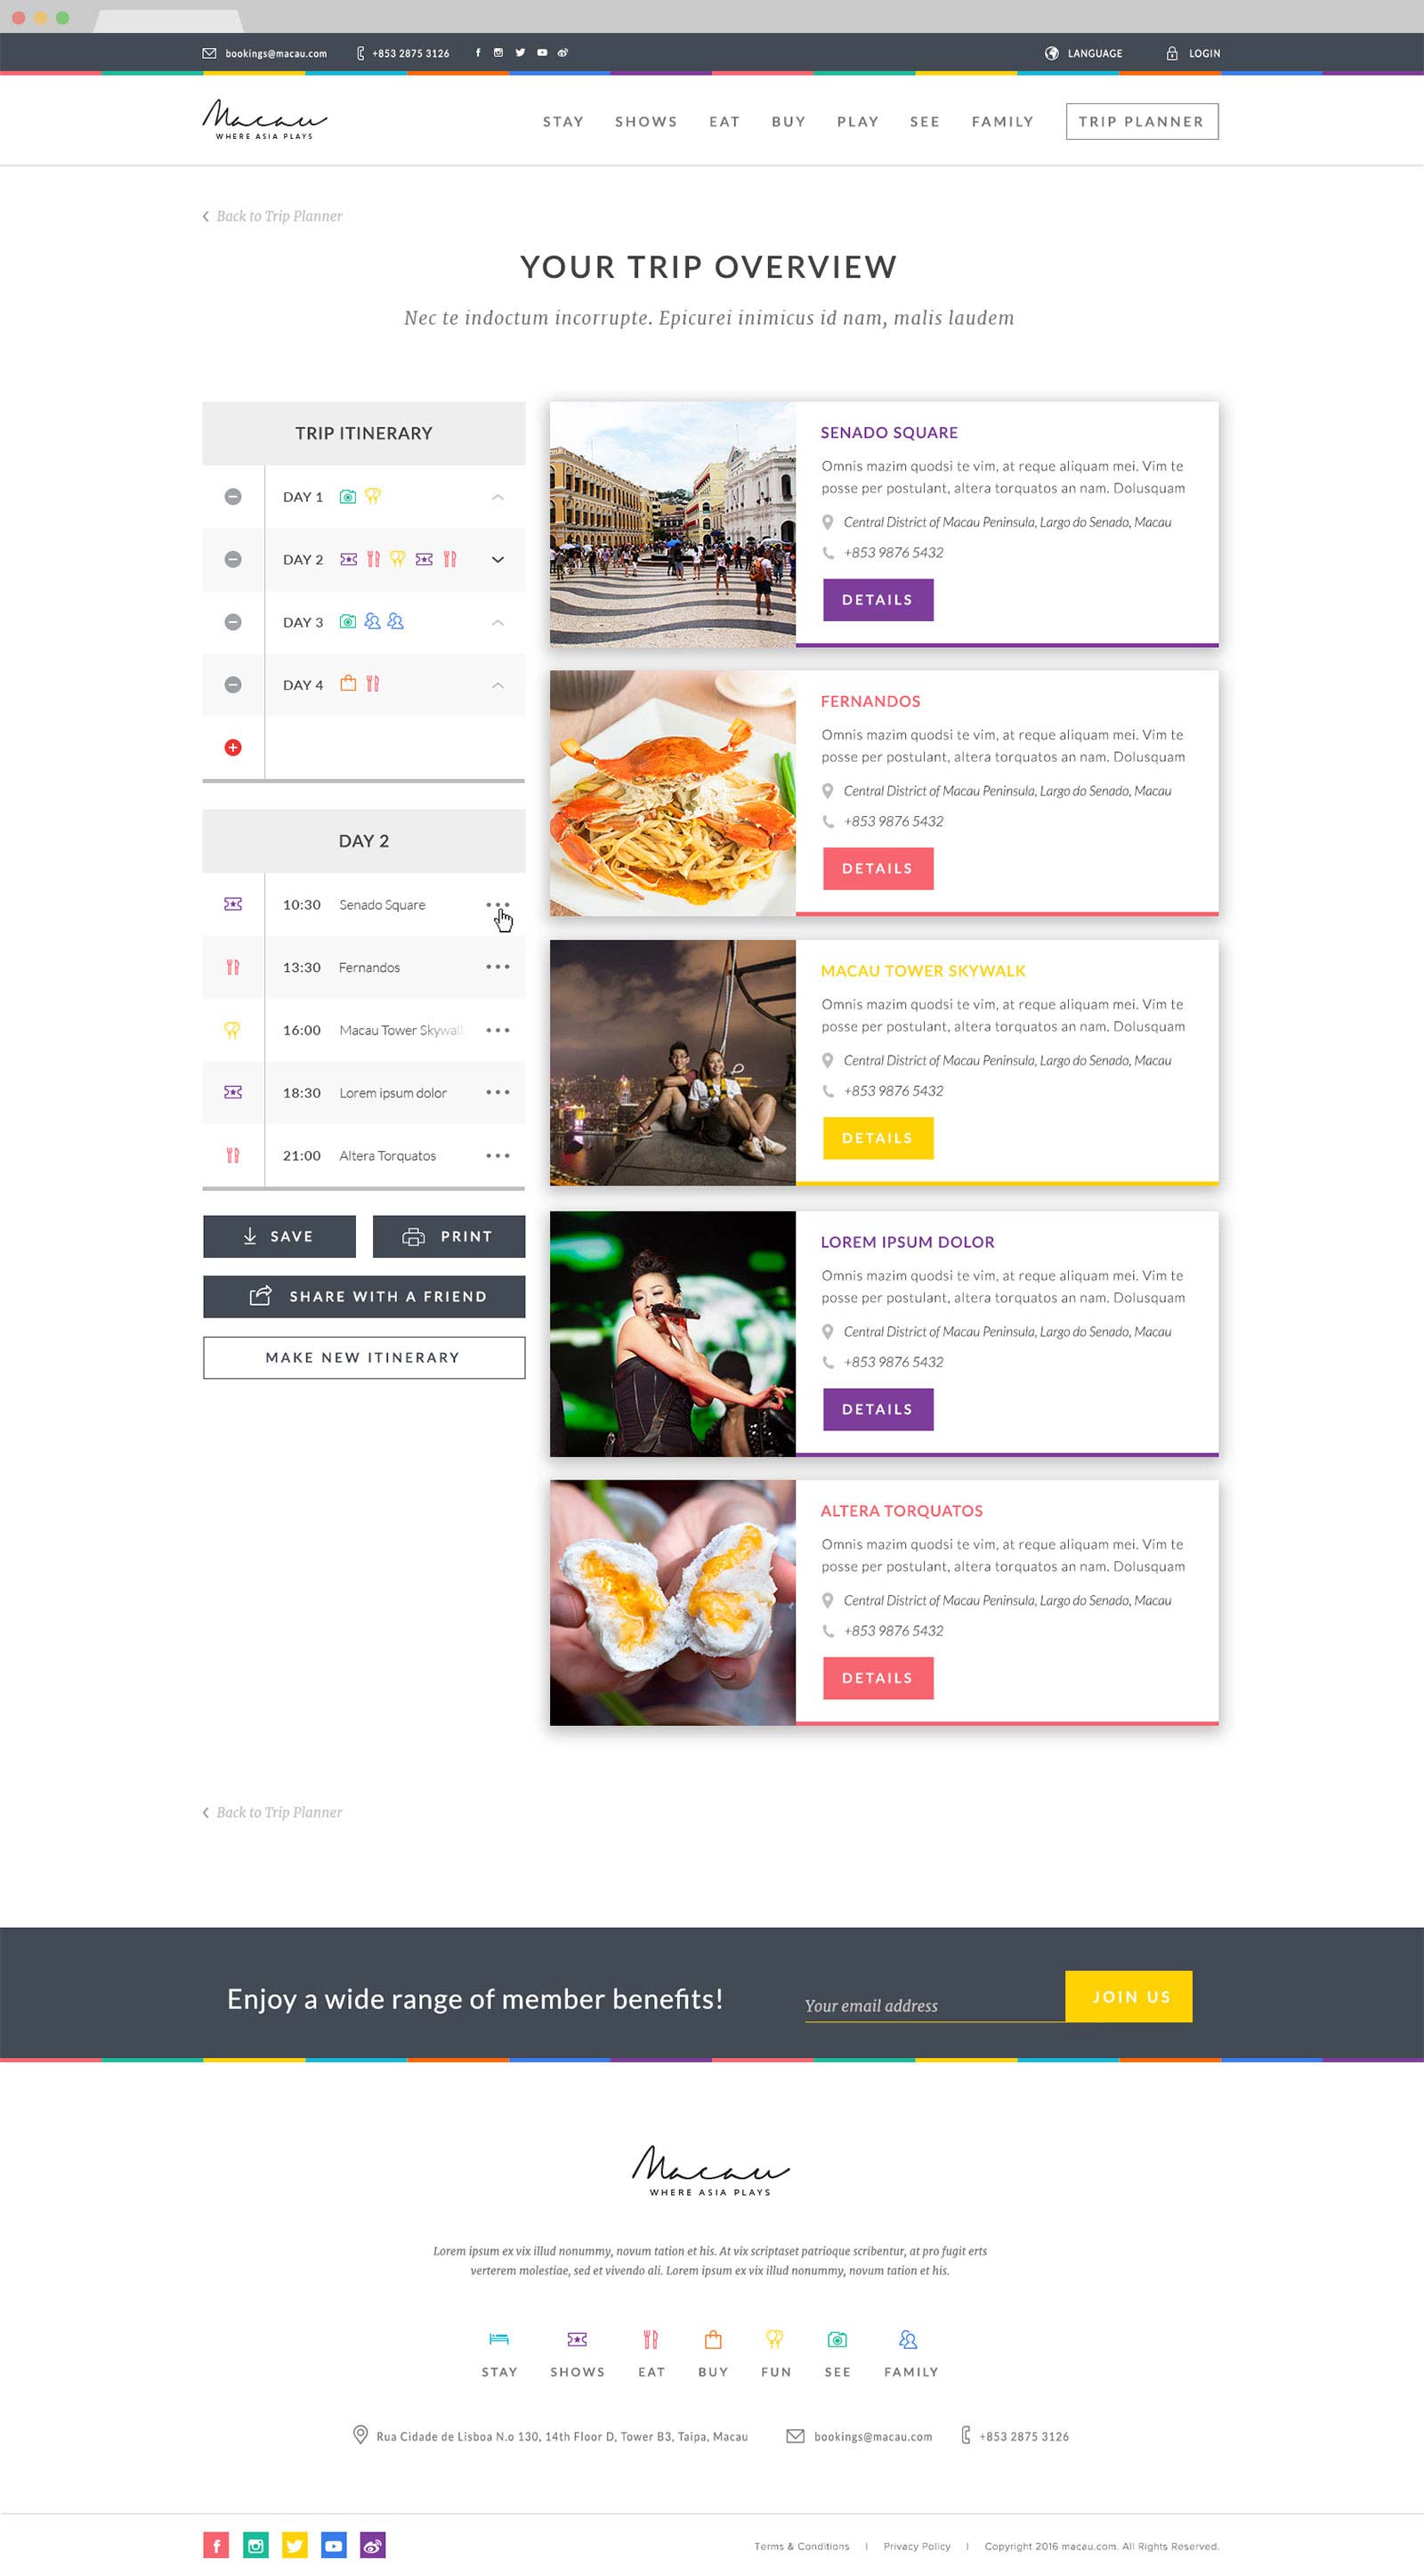 web design bali macau.com 04 - Macau.com